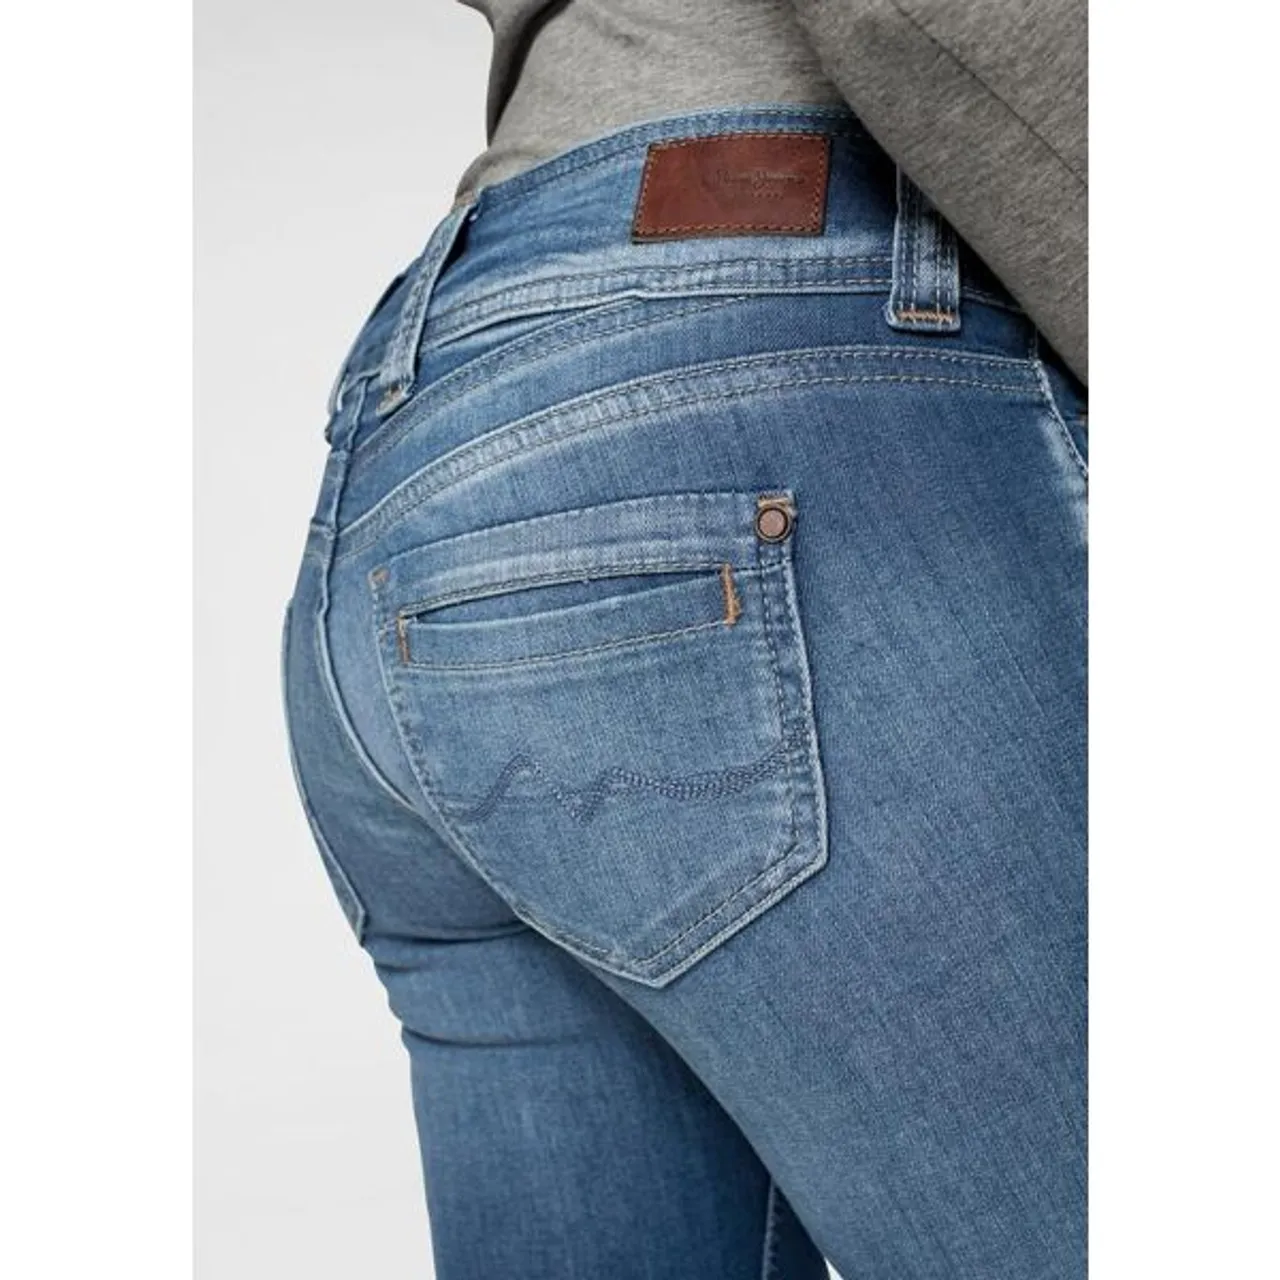 Straight-Jeans PEPE JEANS "GEN" Gr. 25, Länge 32, blau (royal dark) Damen Jeans Röhrenjeans